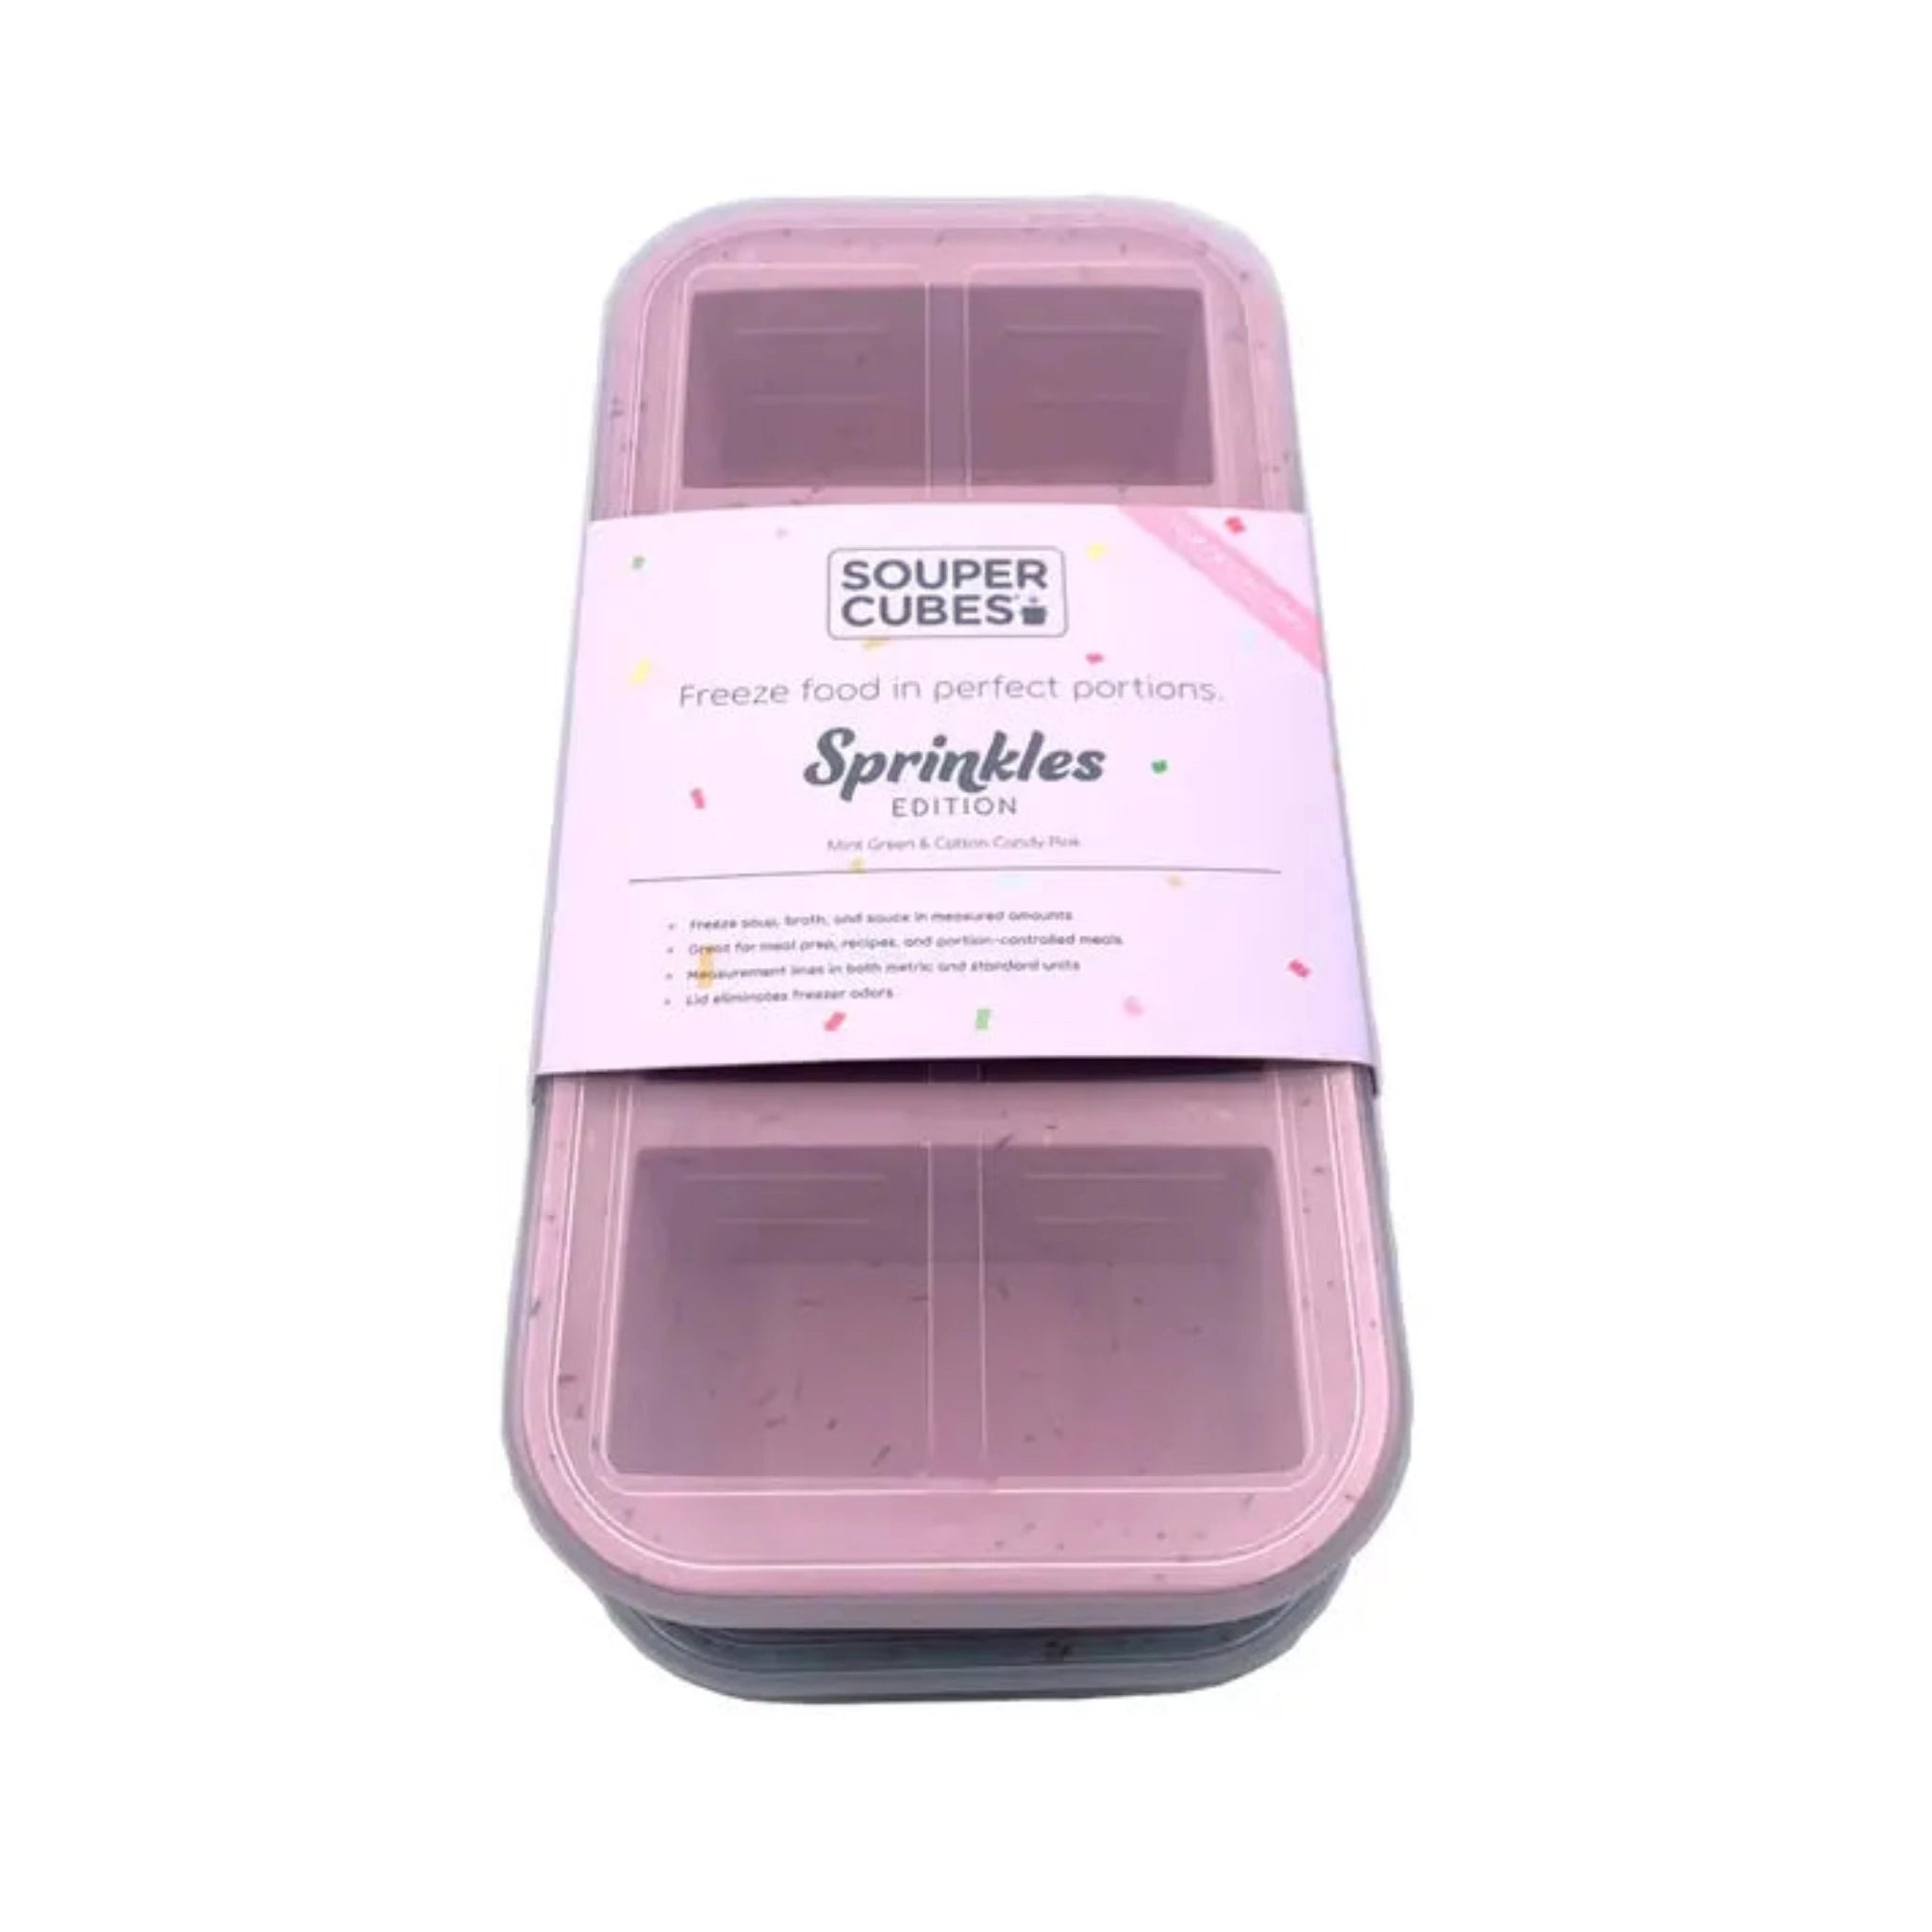 1-Cup Food Tray (Aqua), Souper Cubes